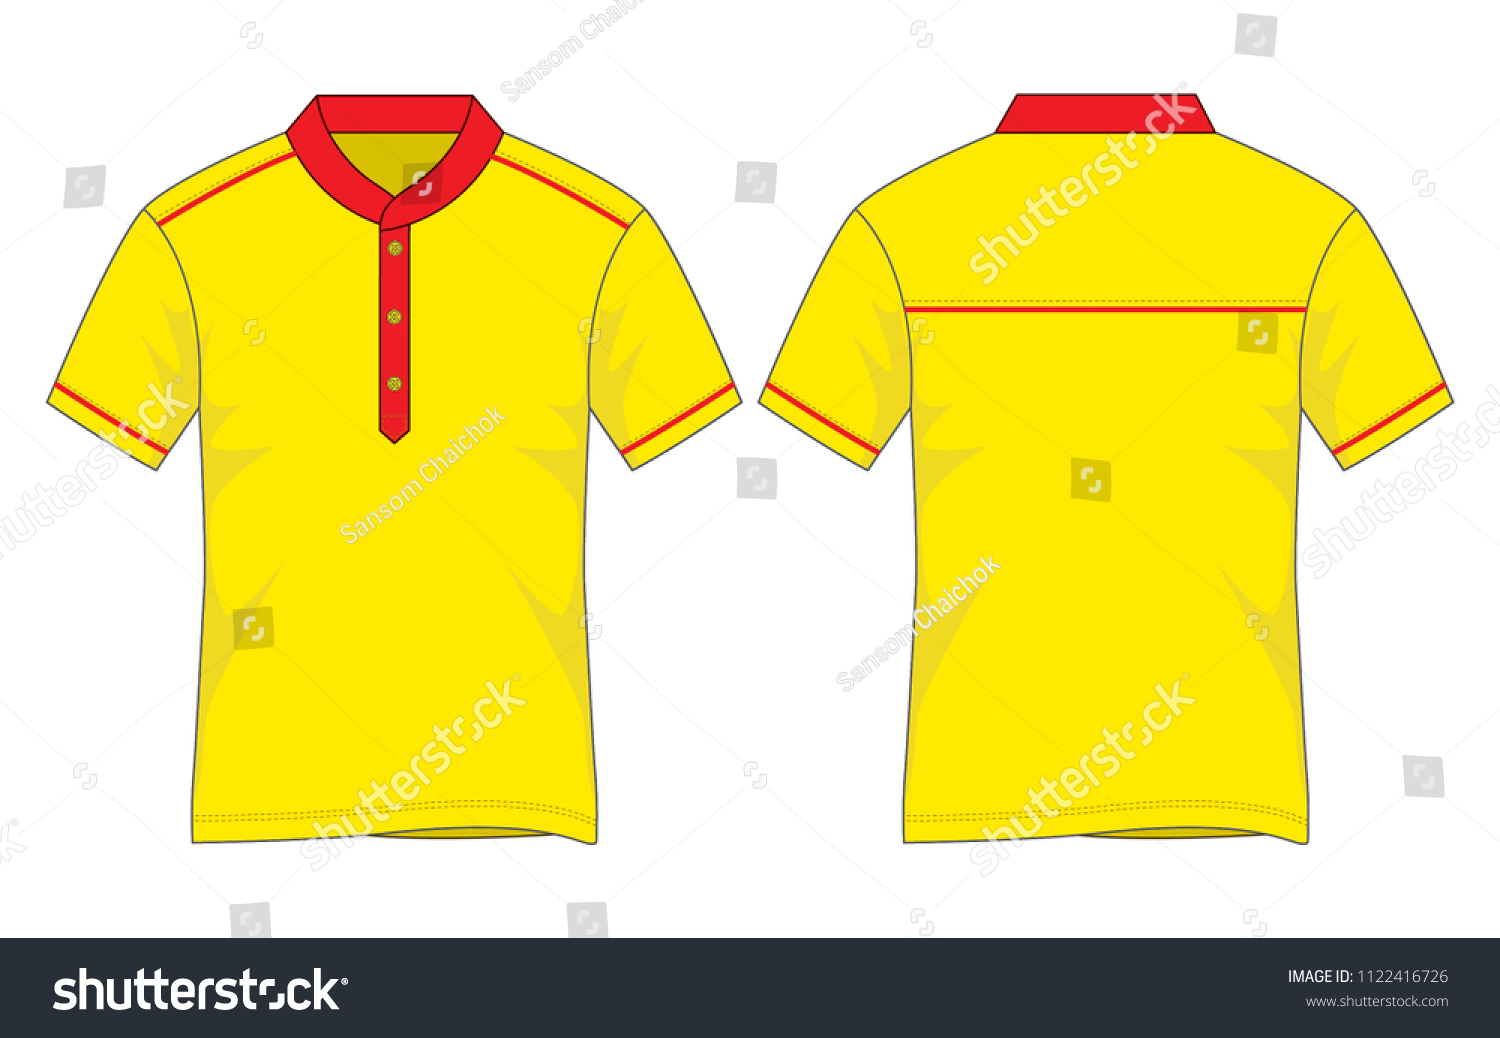 yellow red shirt